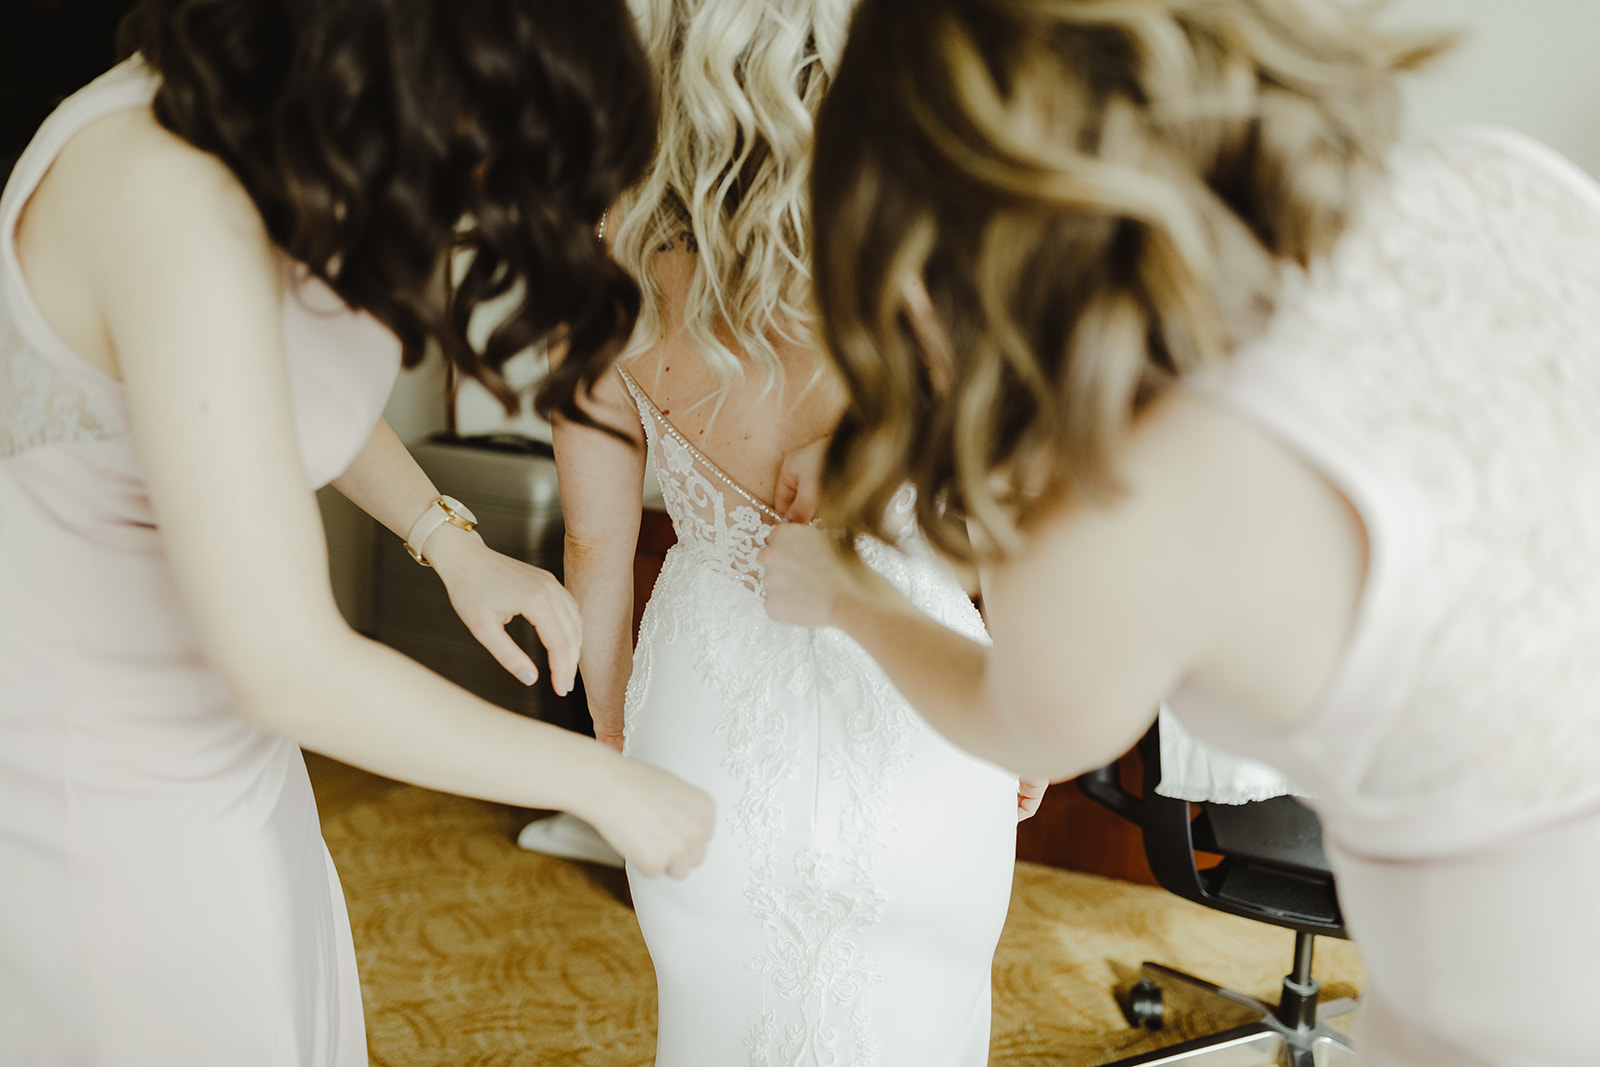 Bridesmaids zipping up a brides dress